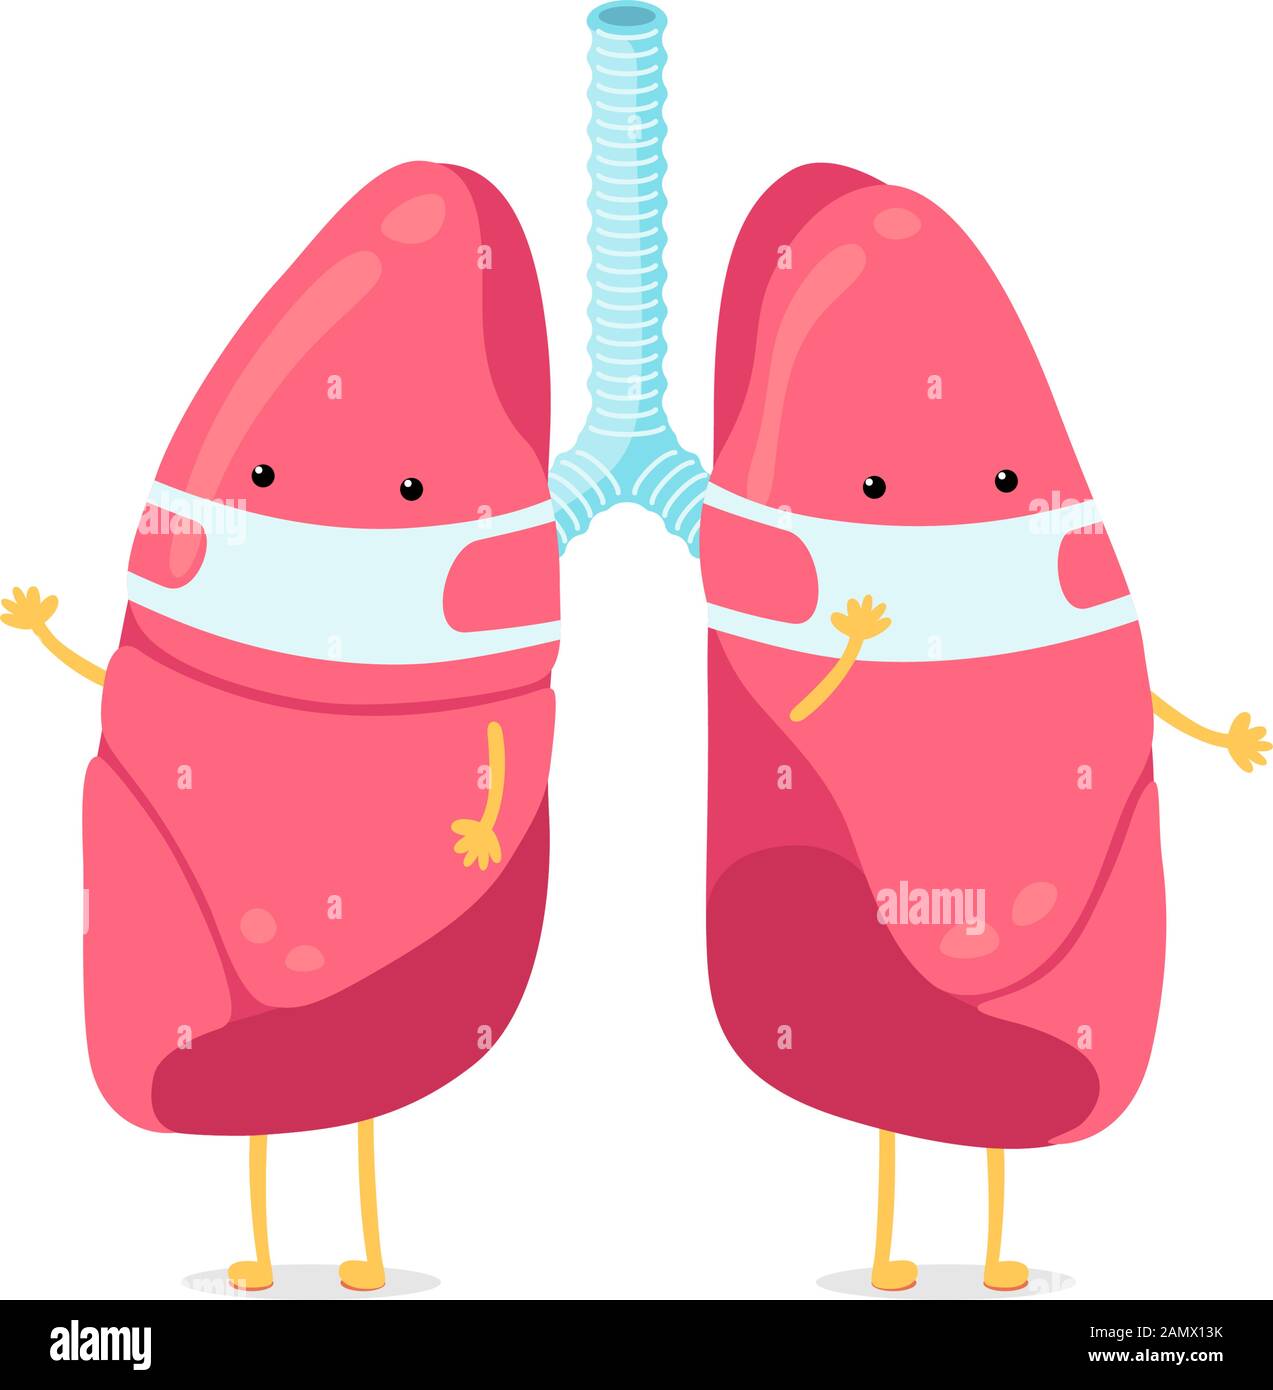 Niedliche Cartoon Lunge Charakter mit Atemhygiene Maske auf Gesicht. Menschliches Atmungssystem Lunge innere Organ Maskottchen. Medizinische gesunde Anatomie Luftreinhaltung Schutz Vektor Illusrtation Stock Vektor